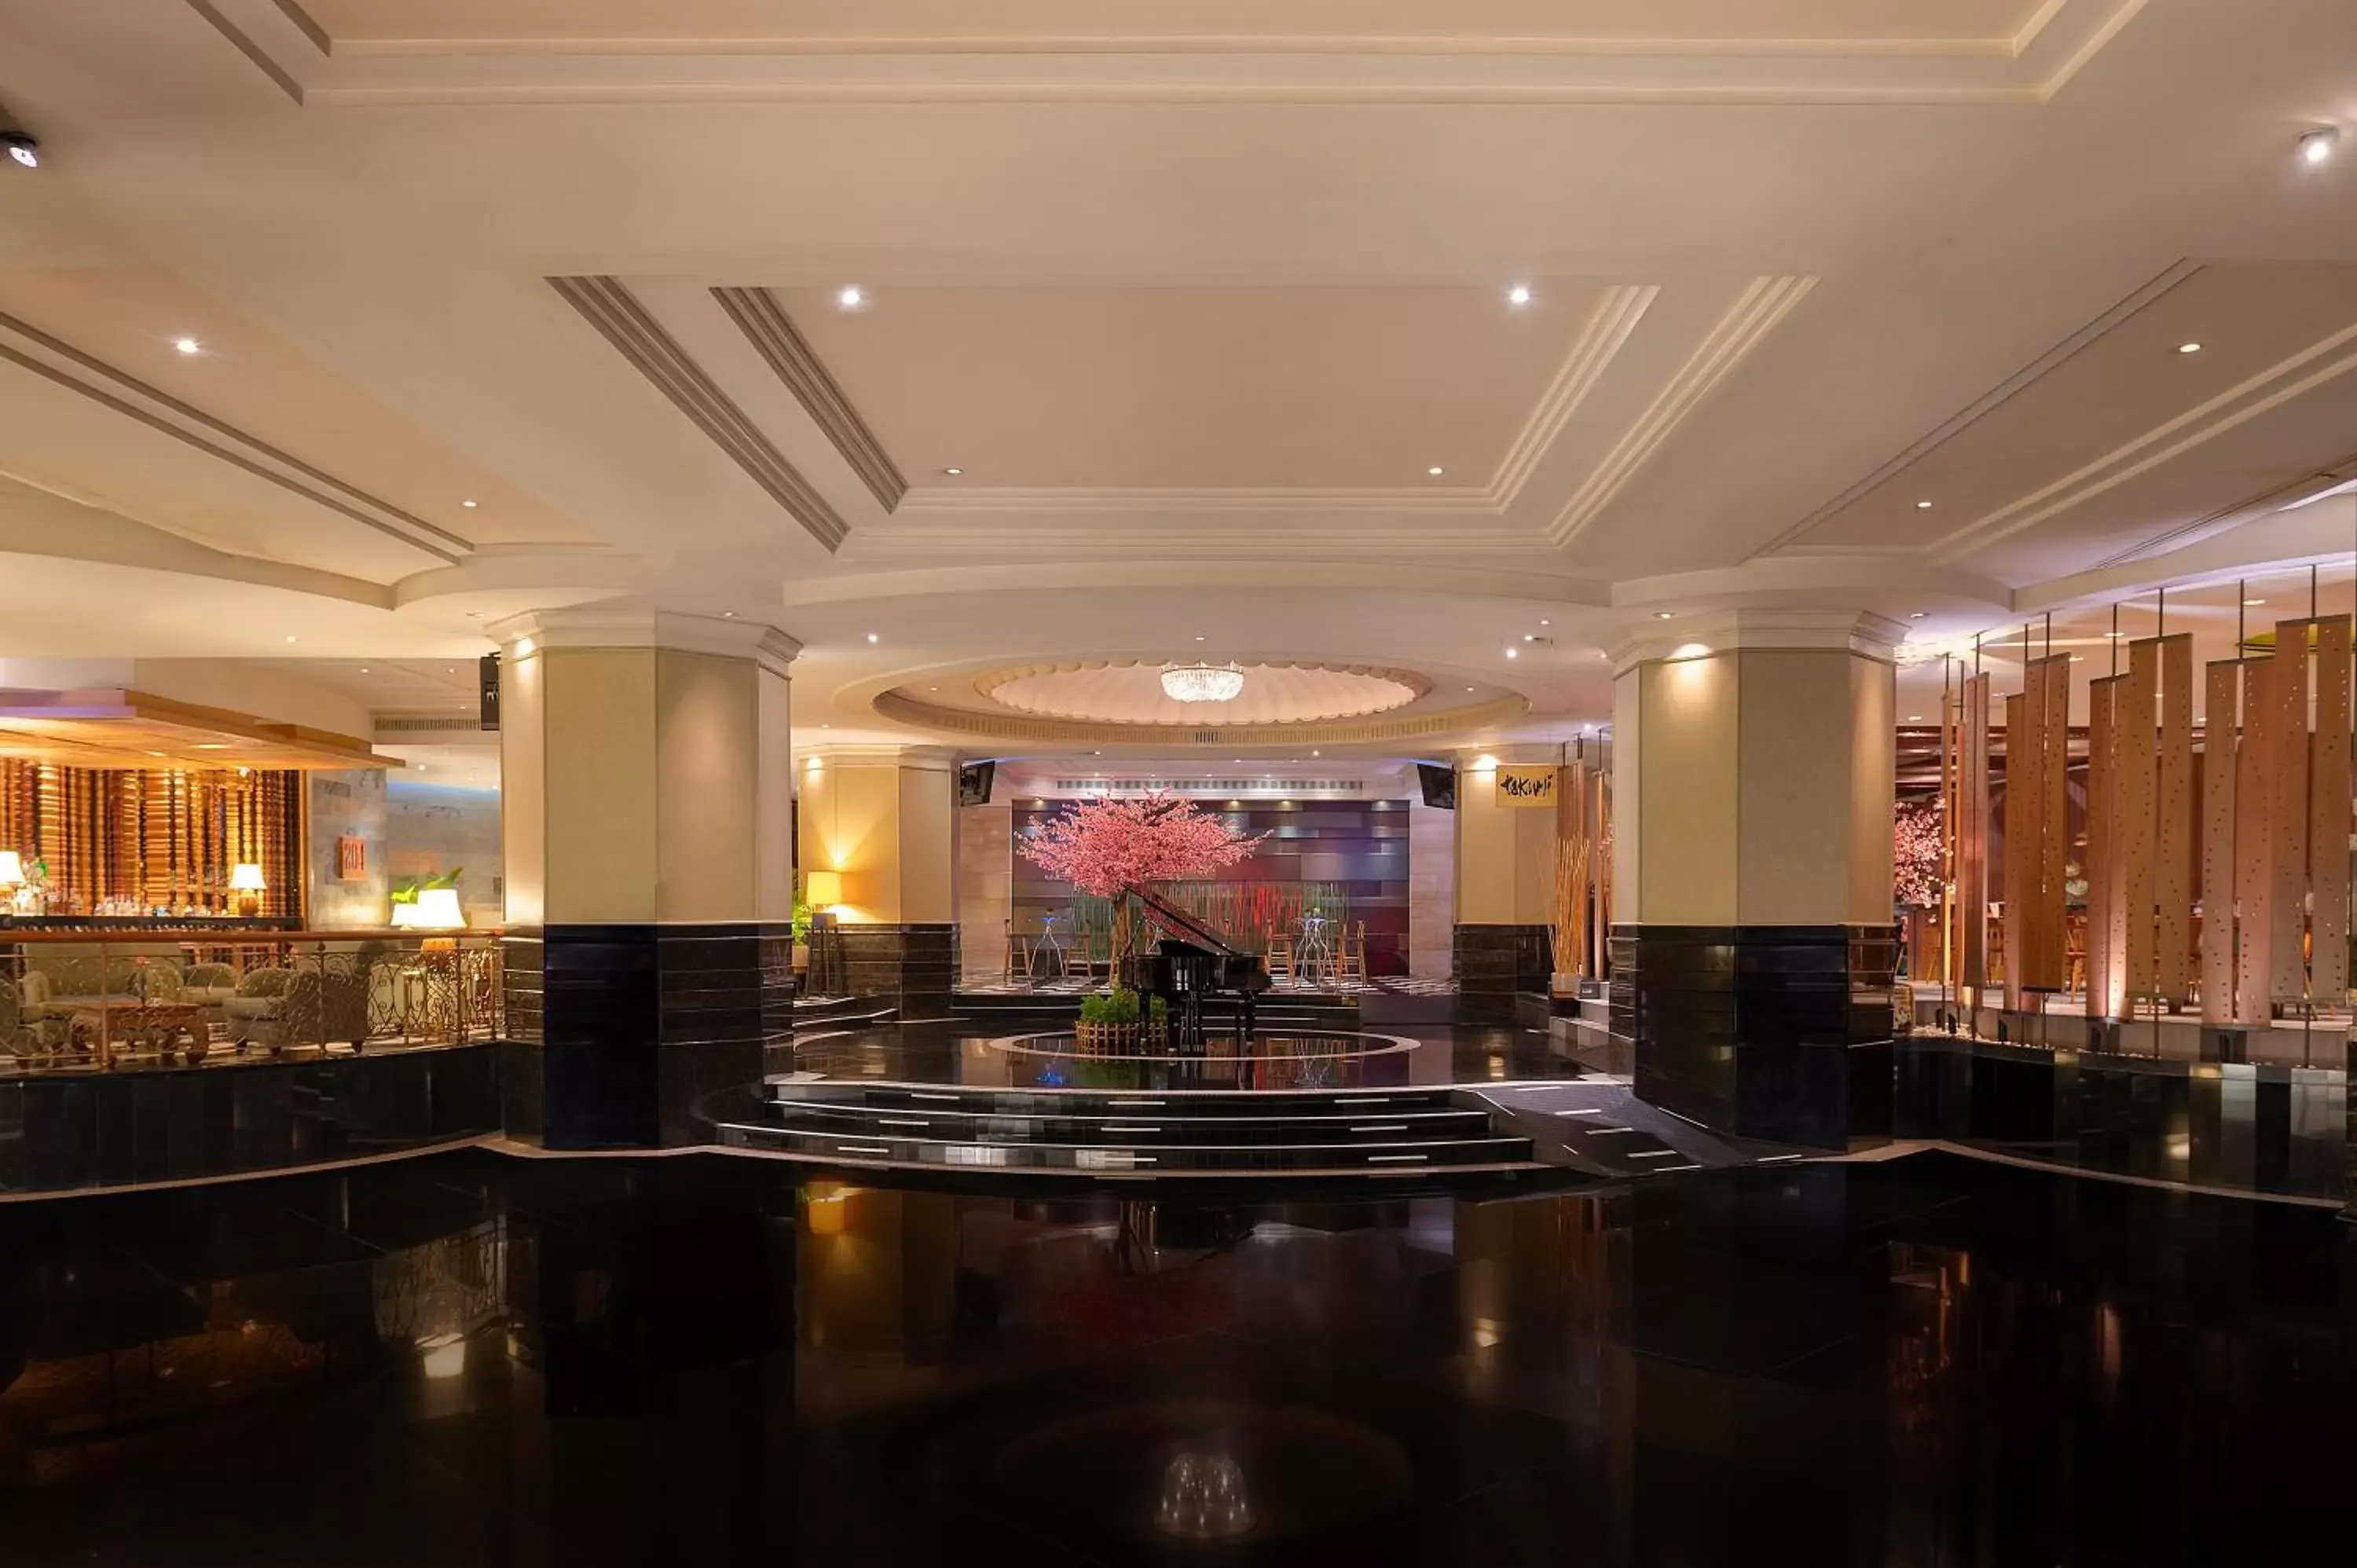 Lobby or reception in Swissotel Bangkok Ratchada